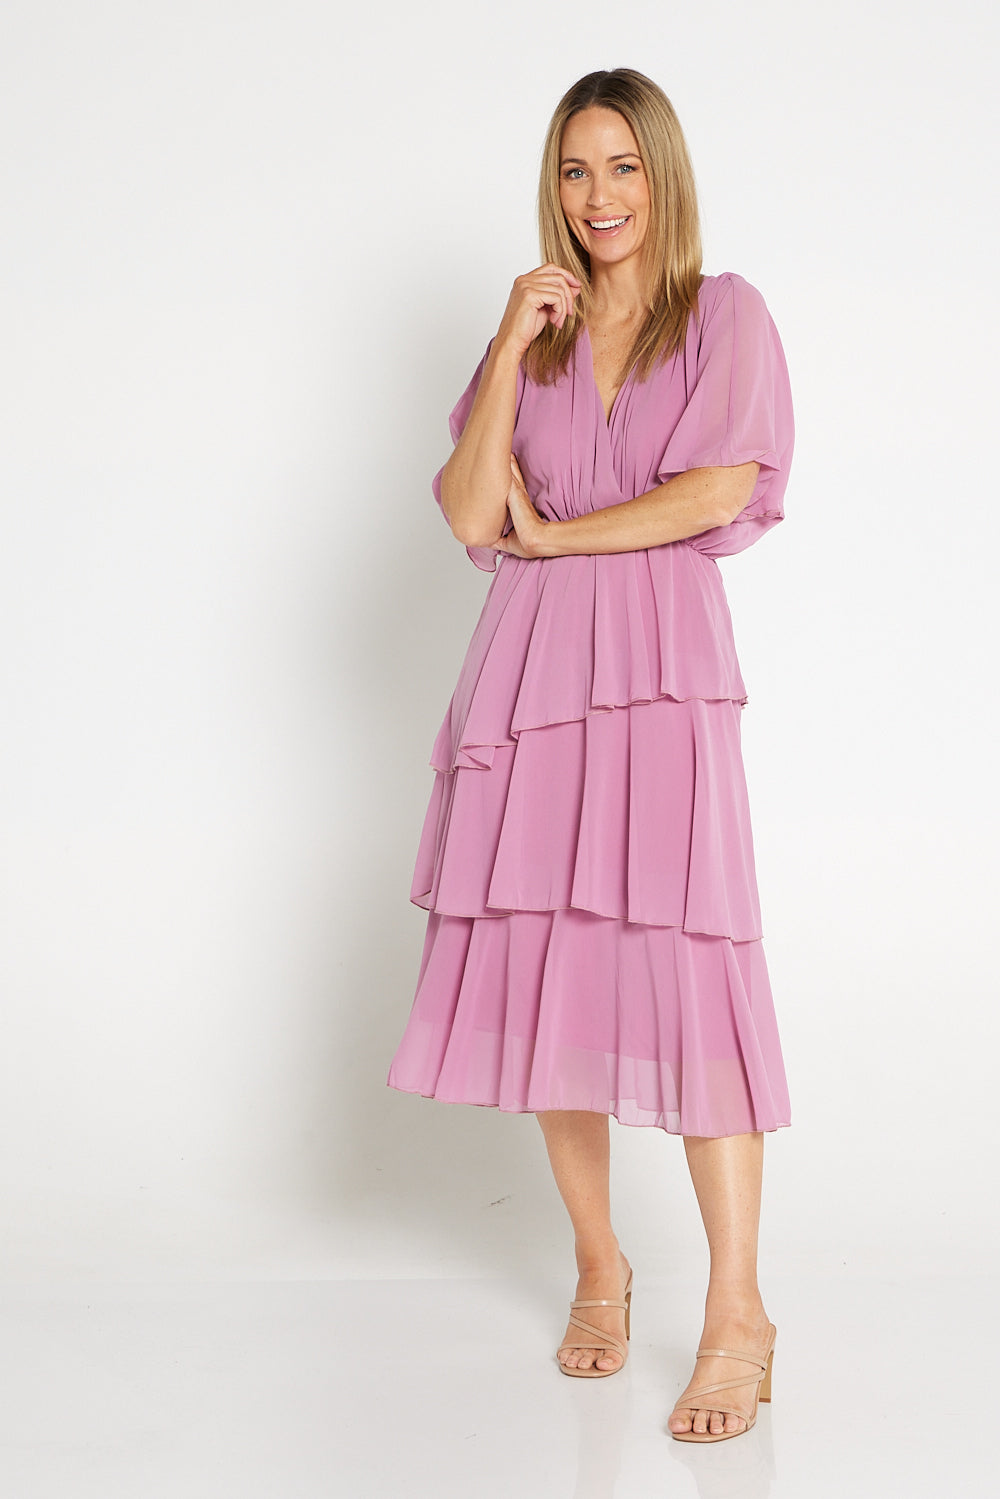 Iris Chiffon Dress - Pink